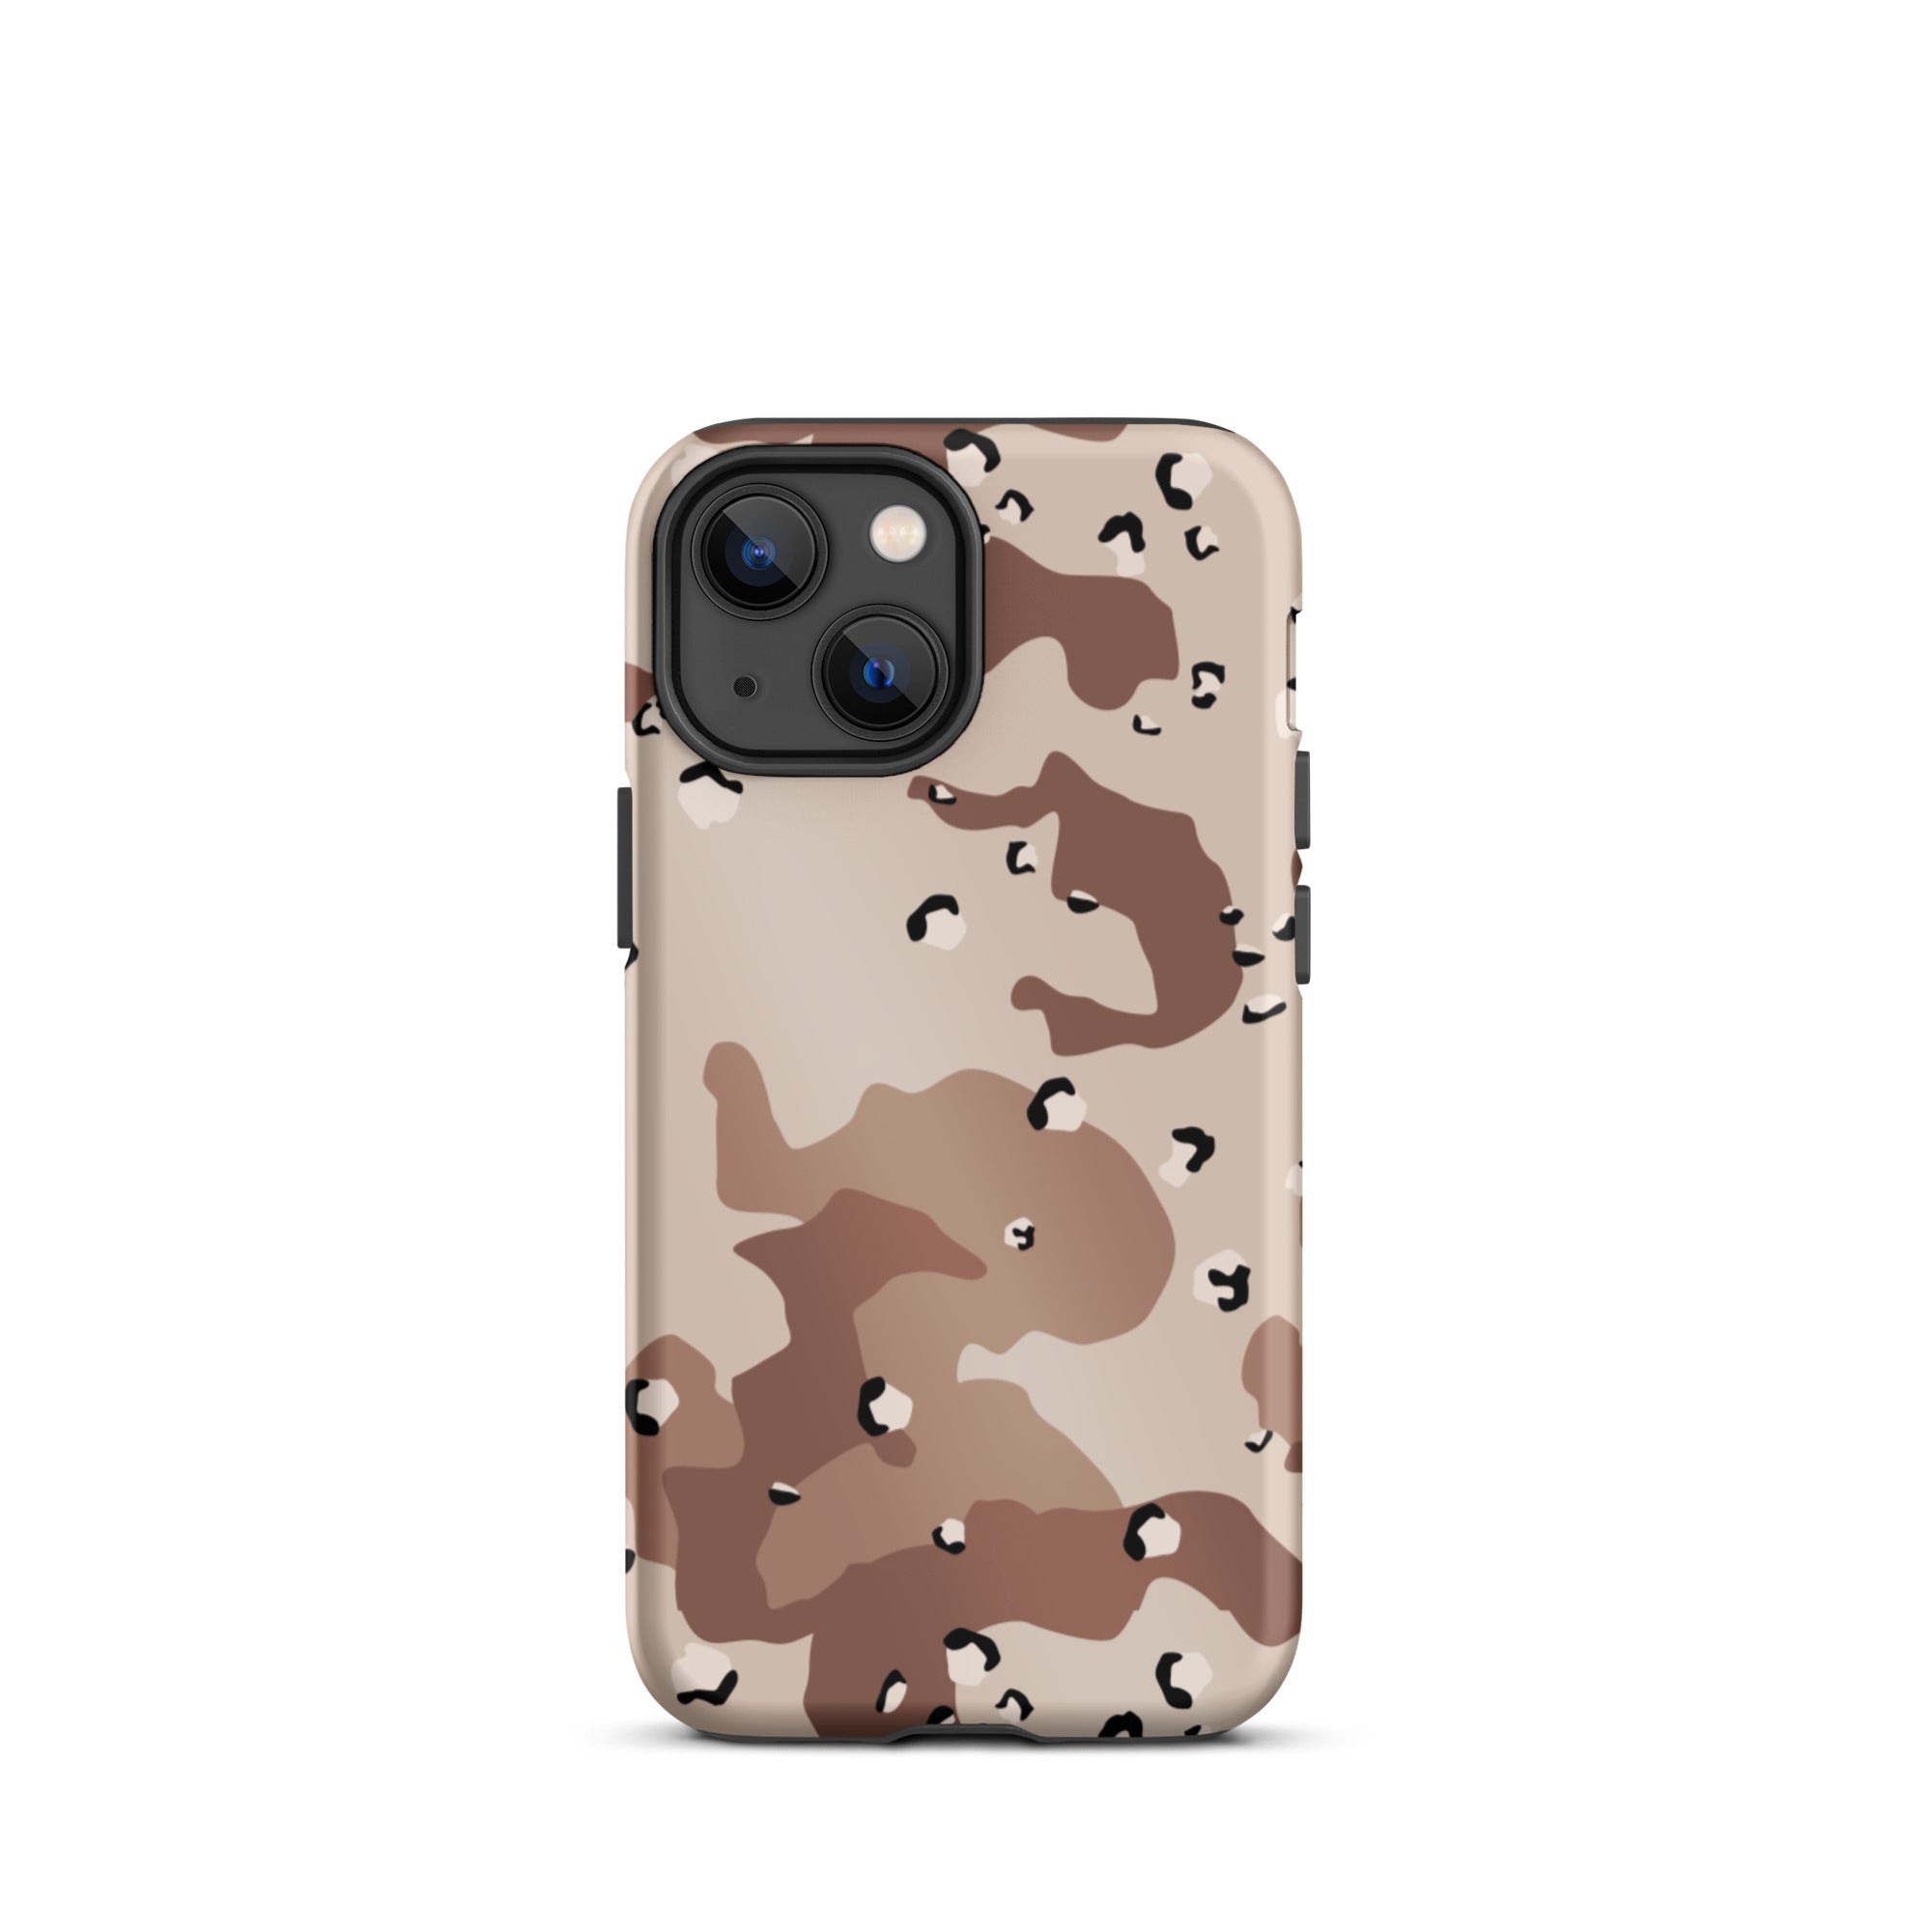 Desert Camo Tough iPhone case